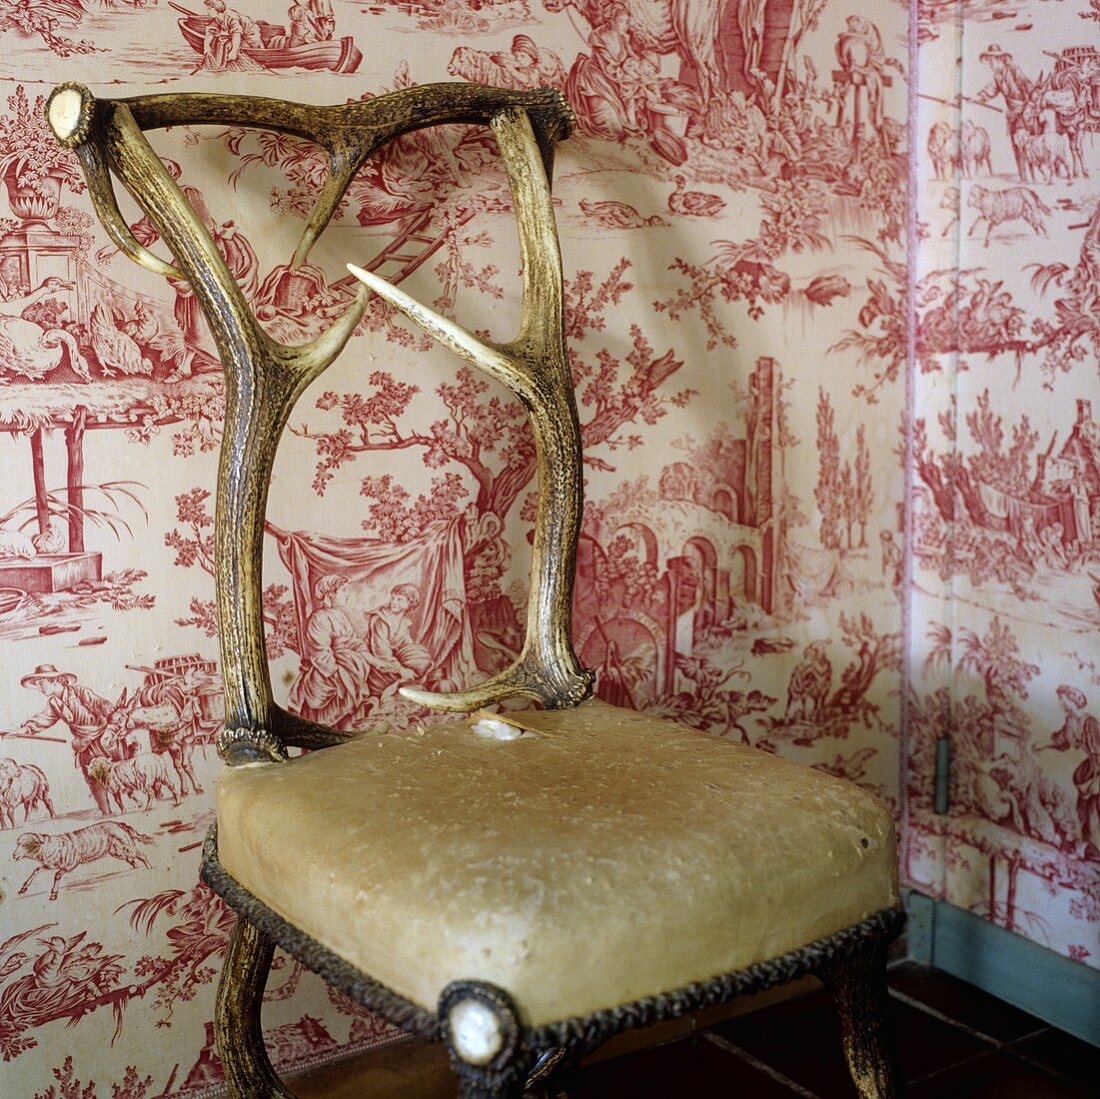 Gepolsterter Stuhl mit verarbeitetem Hirschgeweih vor gemusterter Tapete auf Wand